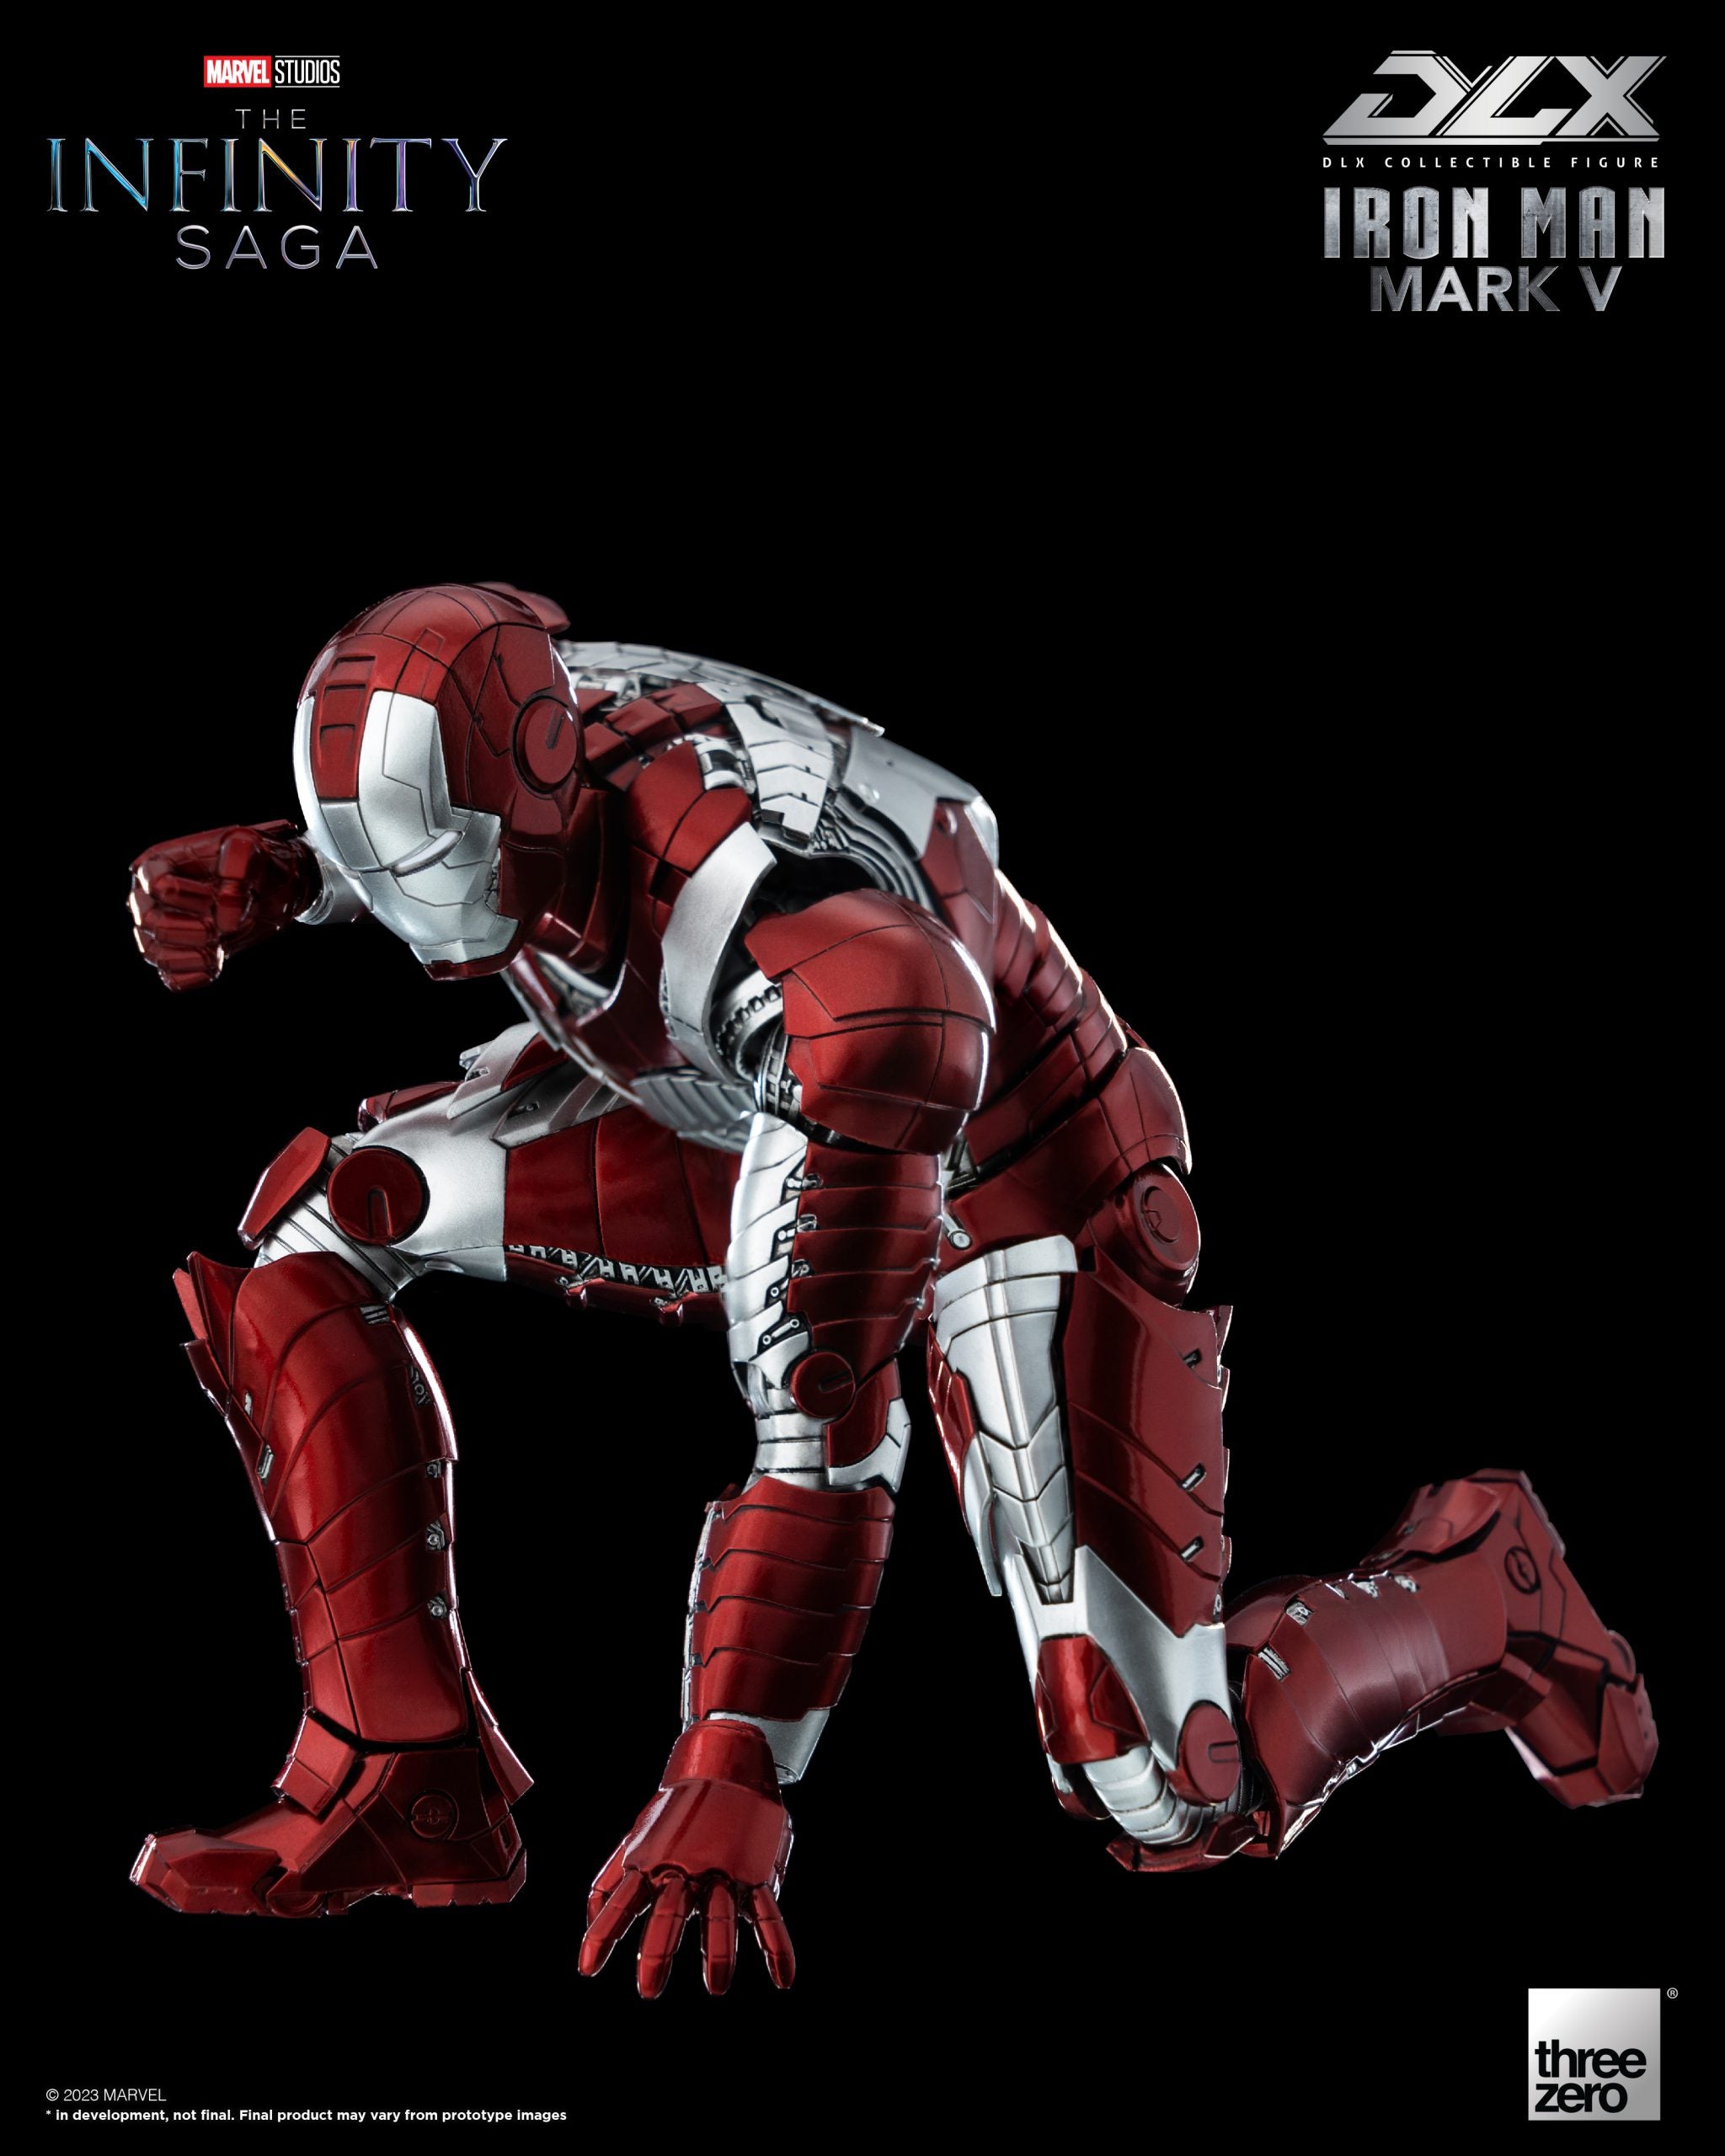 threezero - DLX - Marvel Studios: The Infinity Saga - Iron Man 2 - Iron Man Mark V (1/12 Scale)